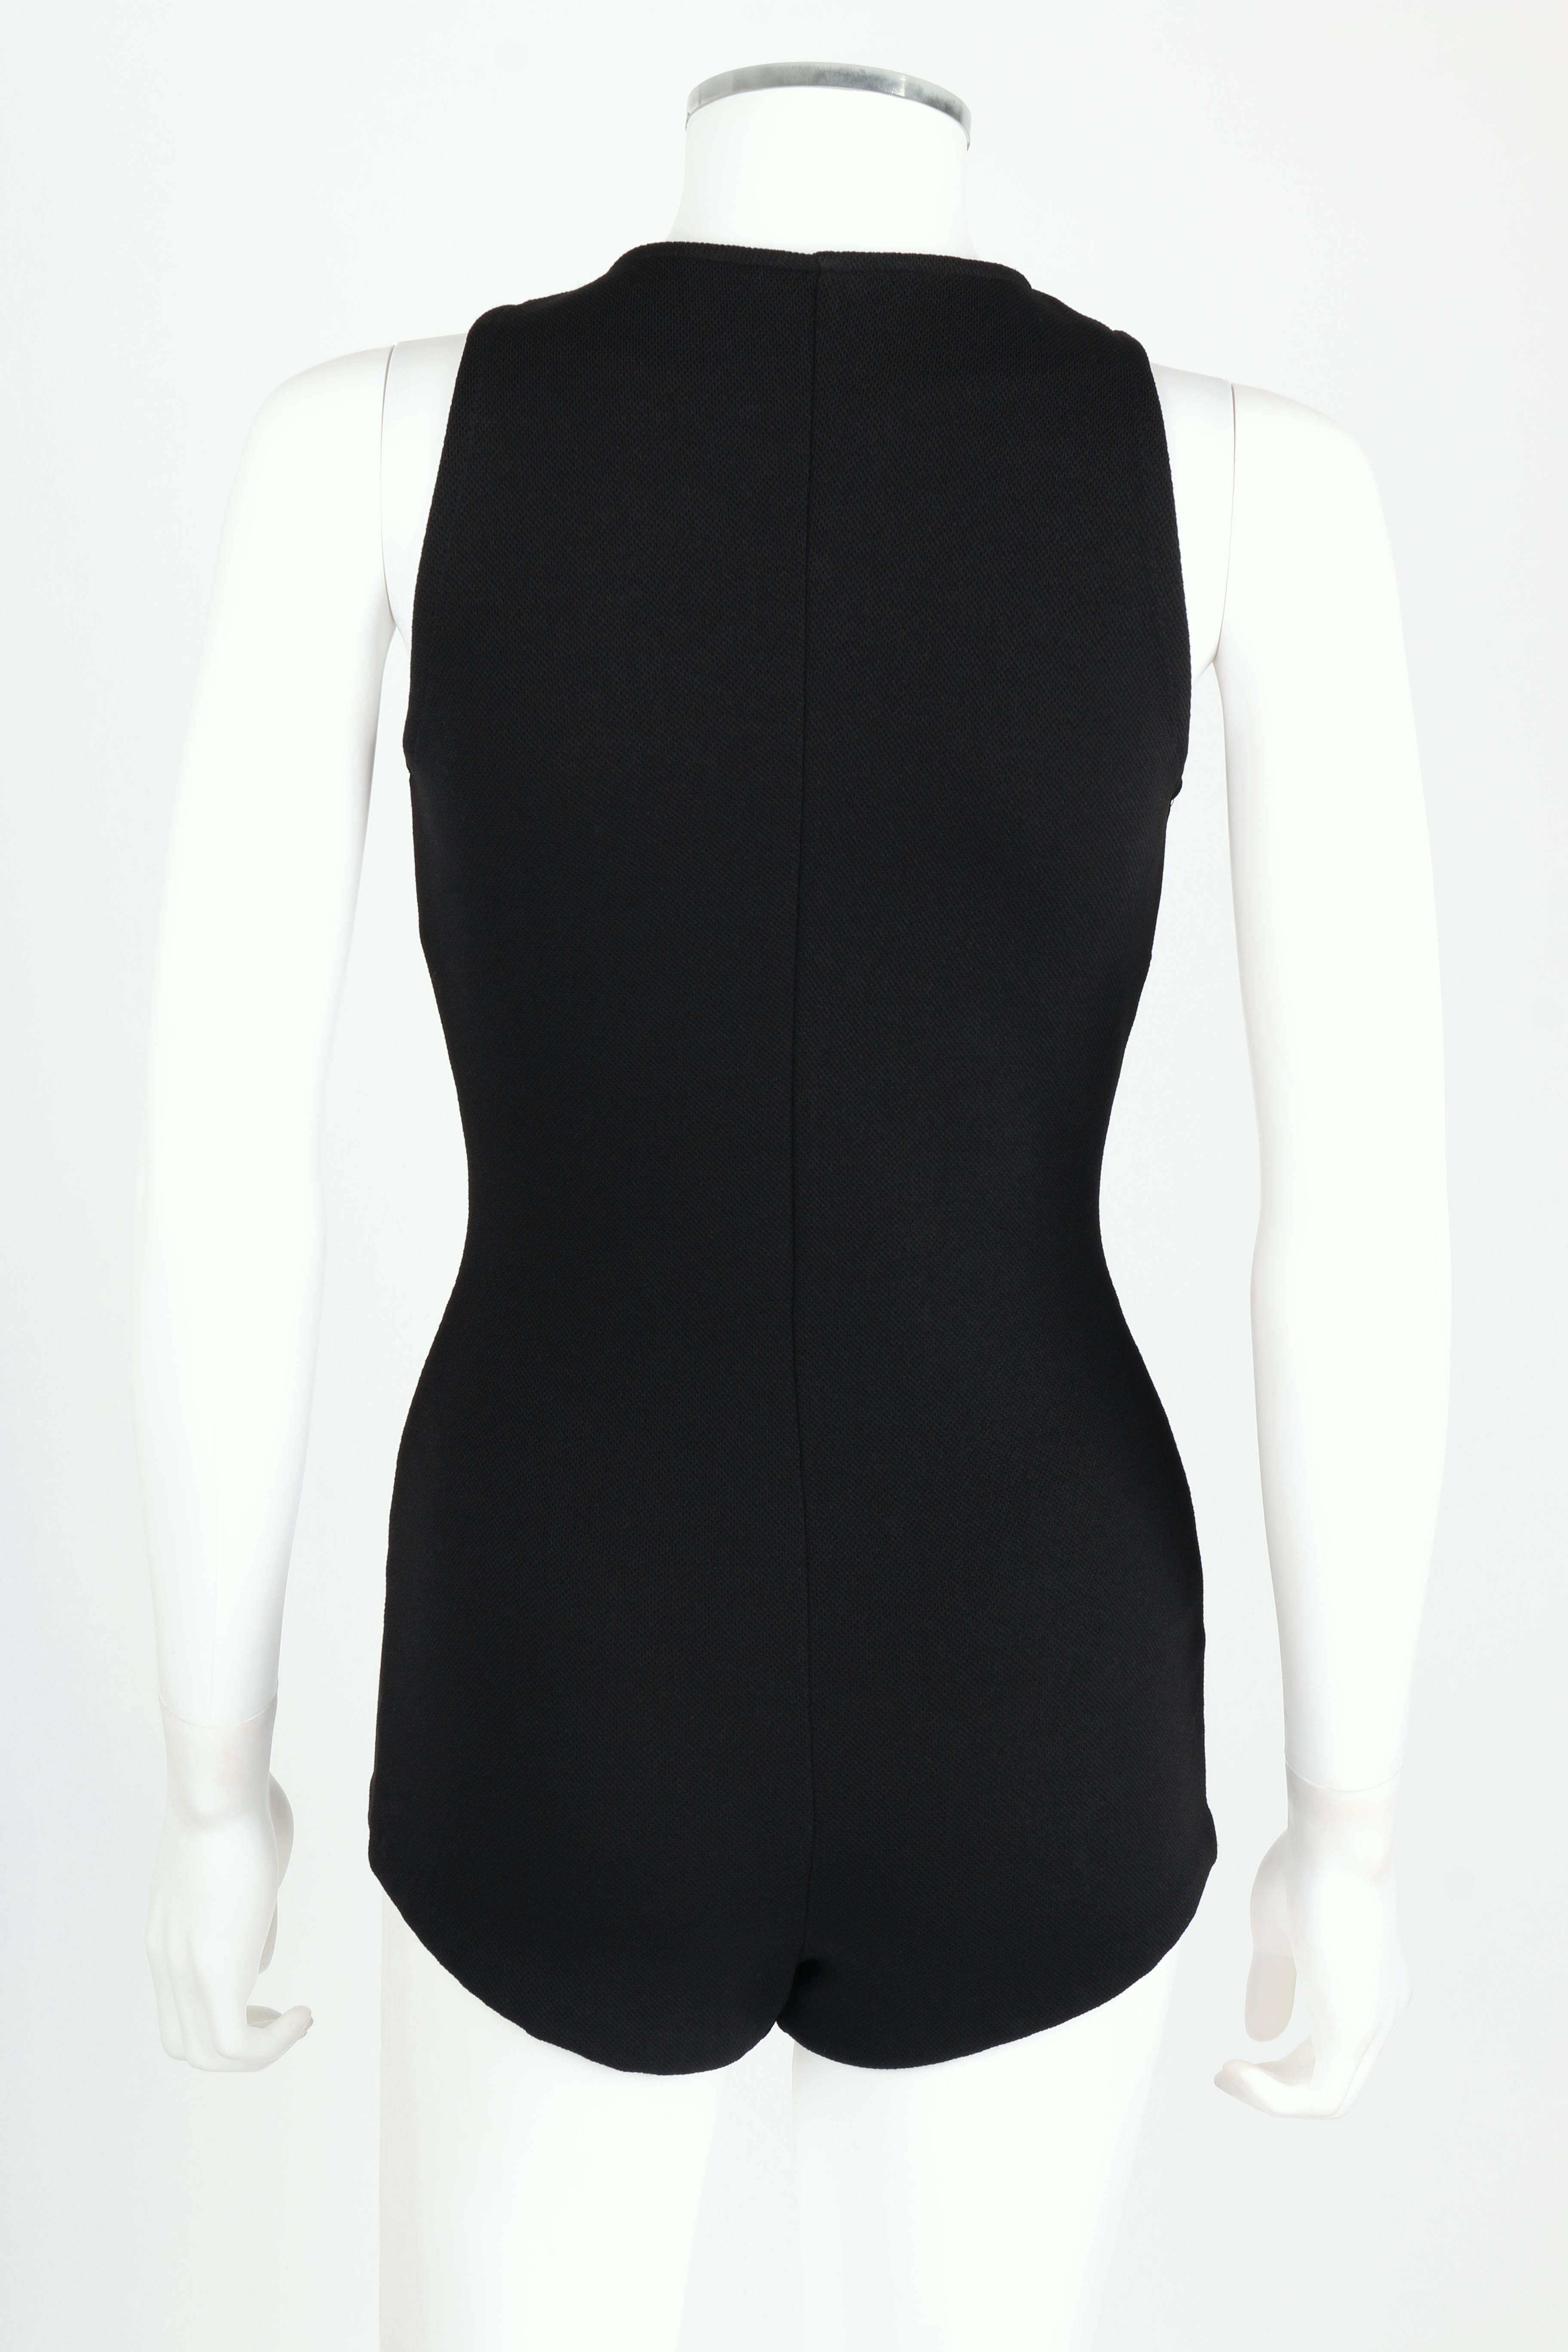 Women's DONALD BROOKS For Sinclair c.1960's Black Plunging Bathing Suit Playsuit Romper